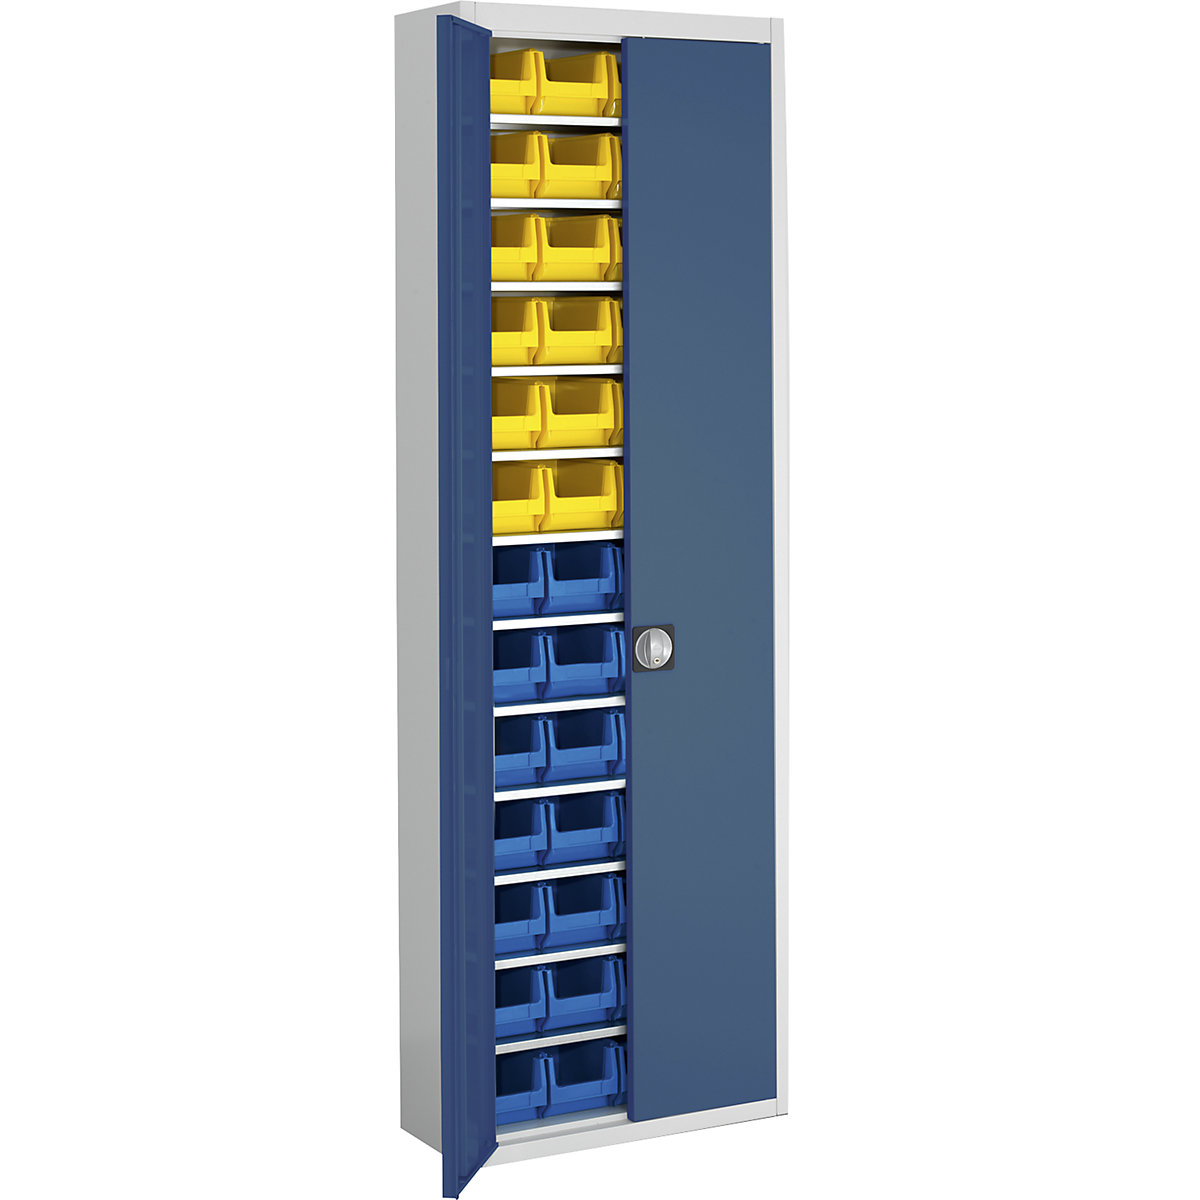 Skladová skříň s přepravkami s viditelným obsahem – mauser, v x š x h 2150 x 680 x 280 mm, dvoubarevné, korpus šedý, dveře modré, 52 přepravek-6